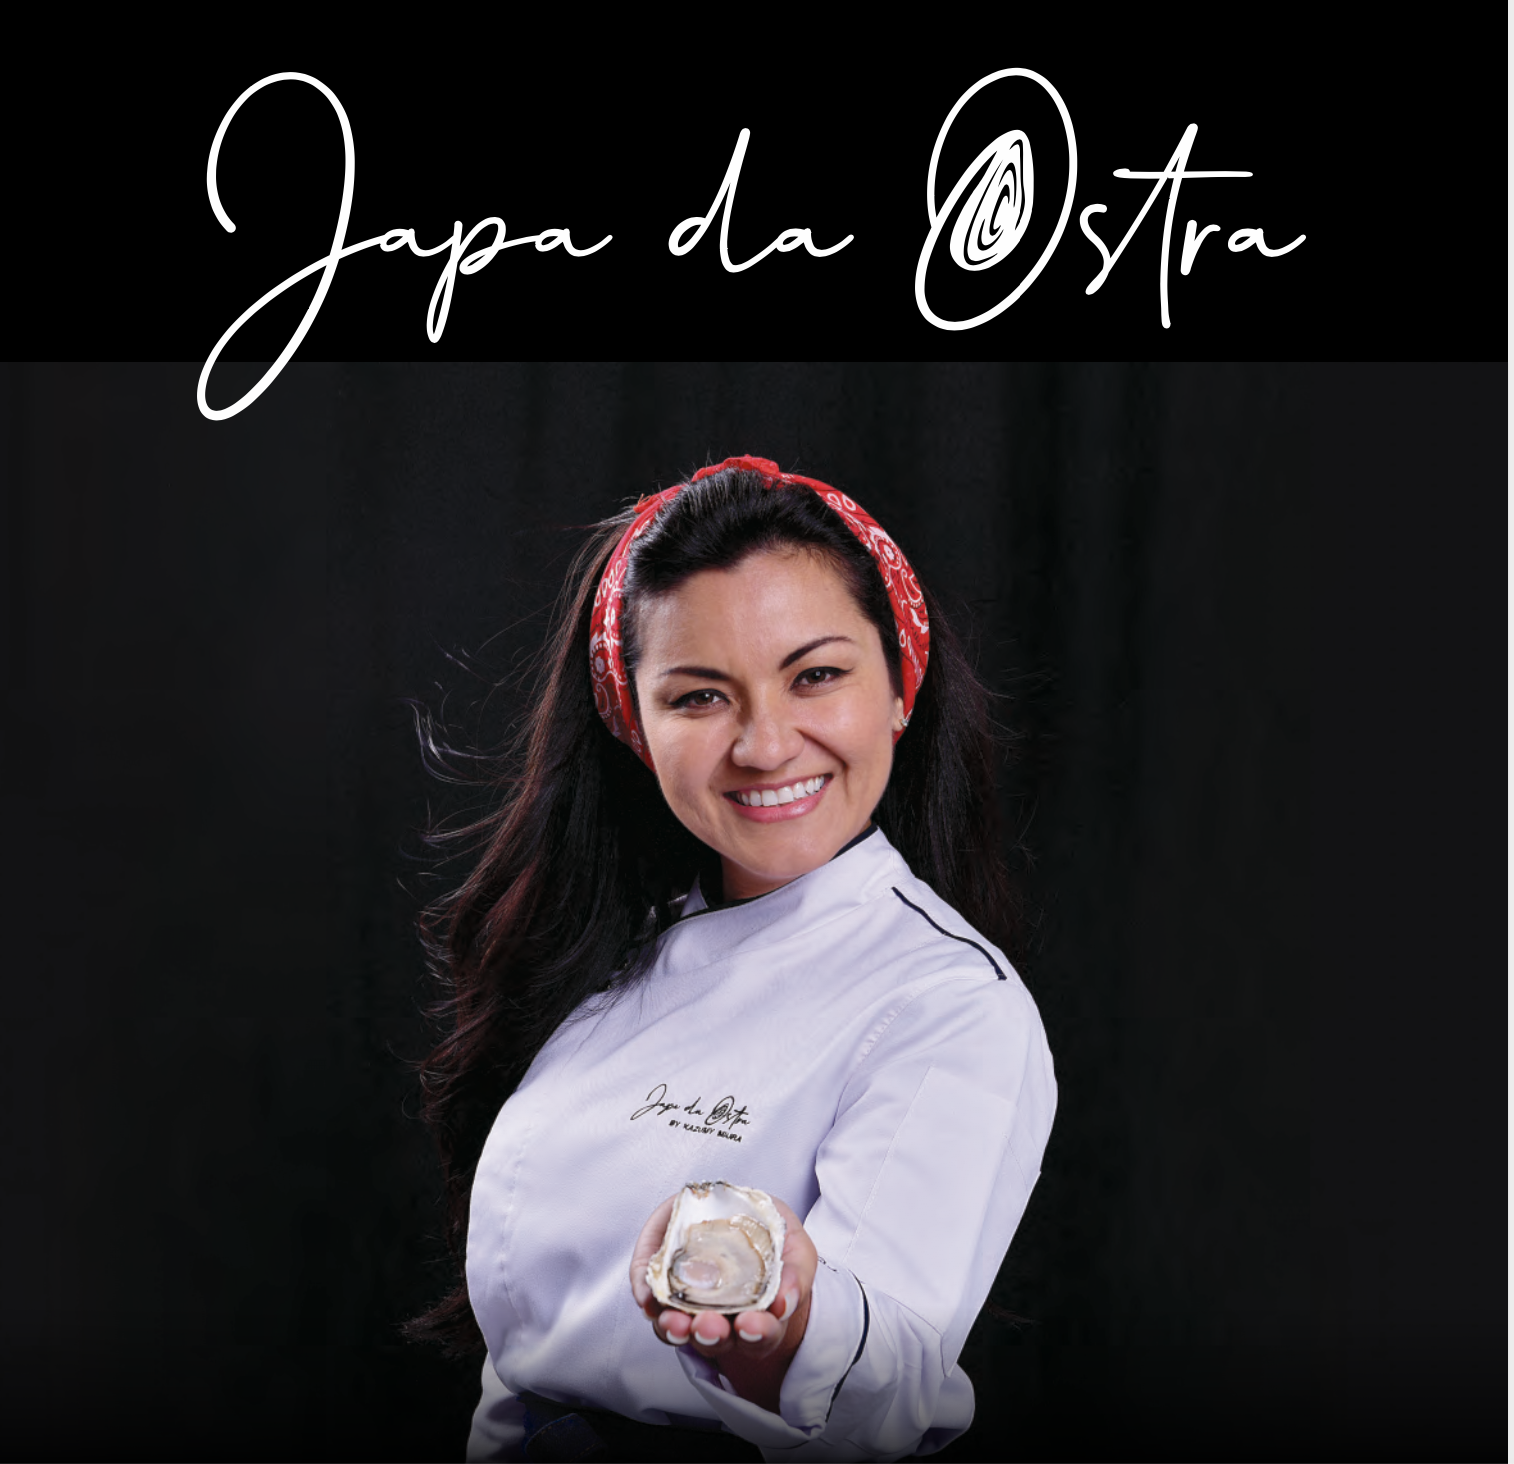 Japa da Ostra conquista o high cearense com seus produtos premium